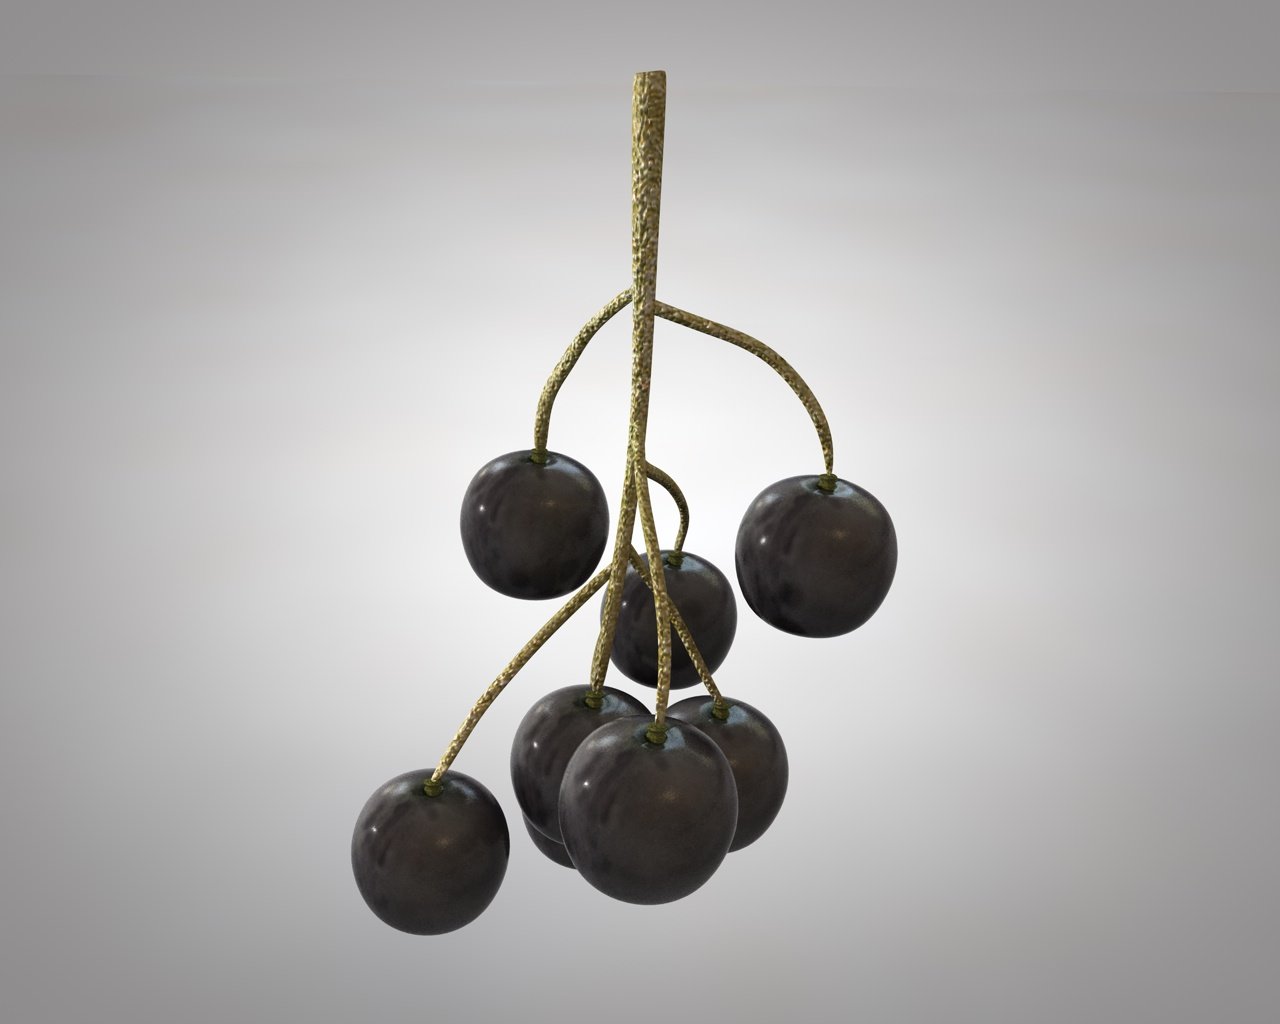 Fruits 3D Models